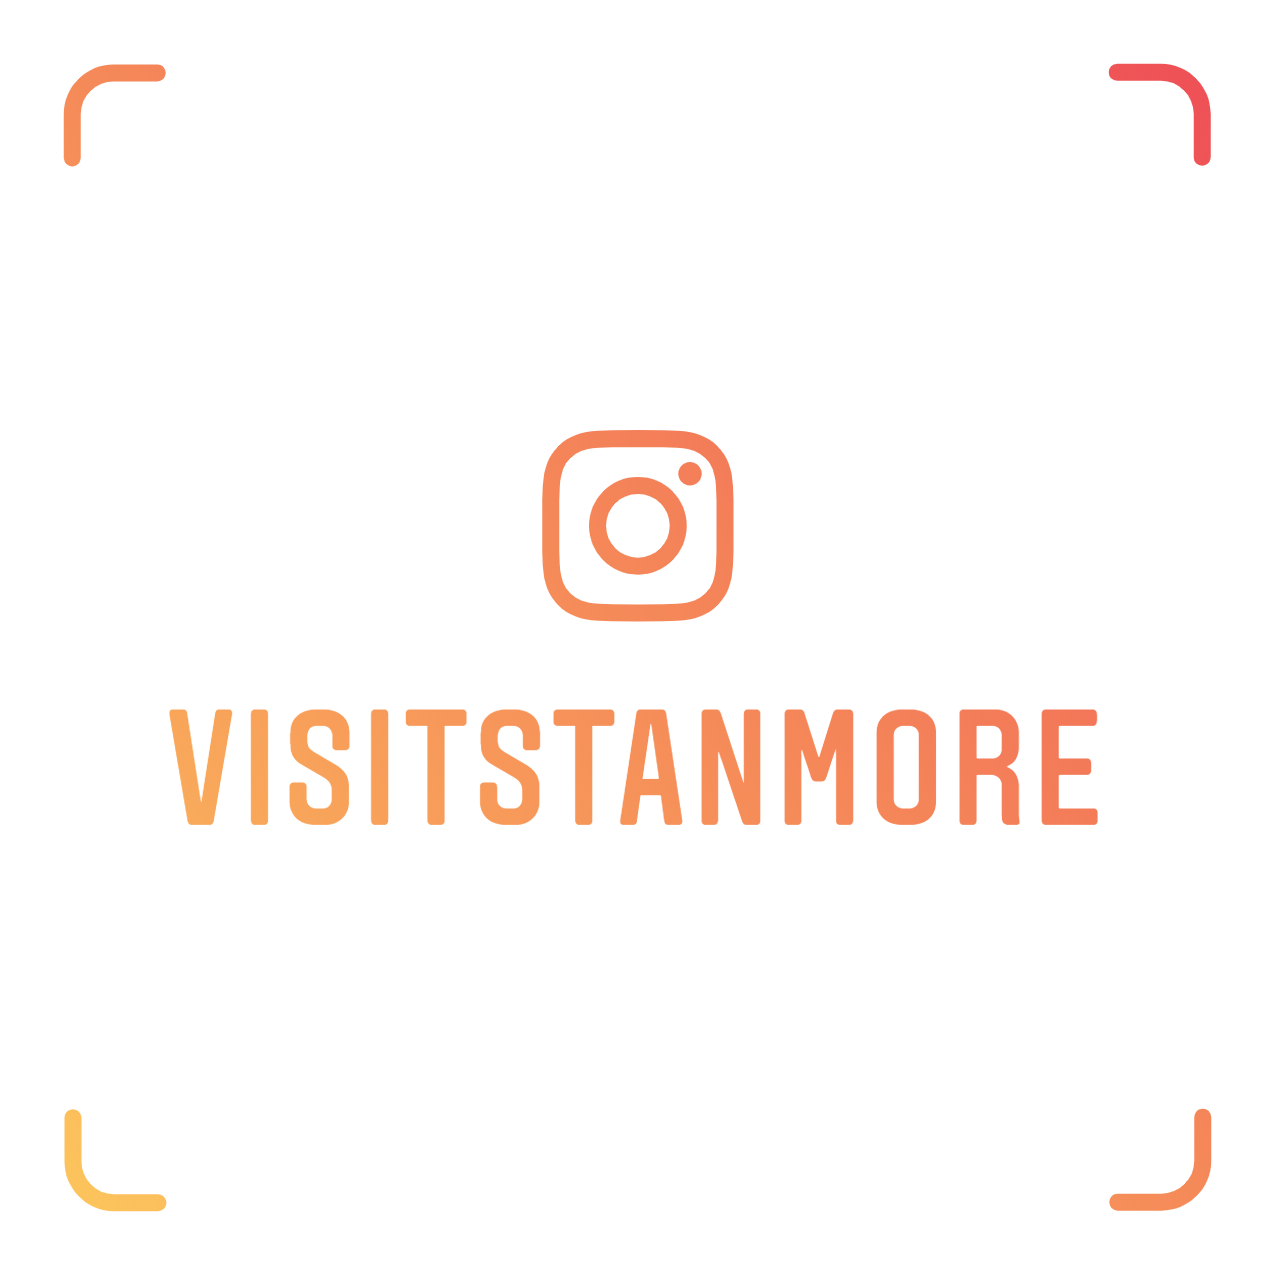 Visit Stanmore